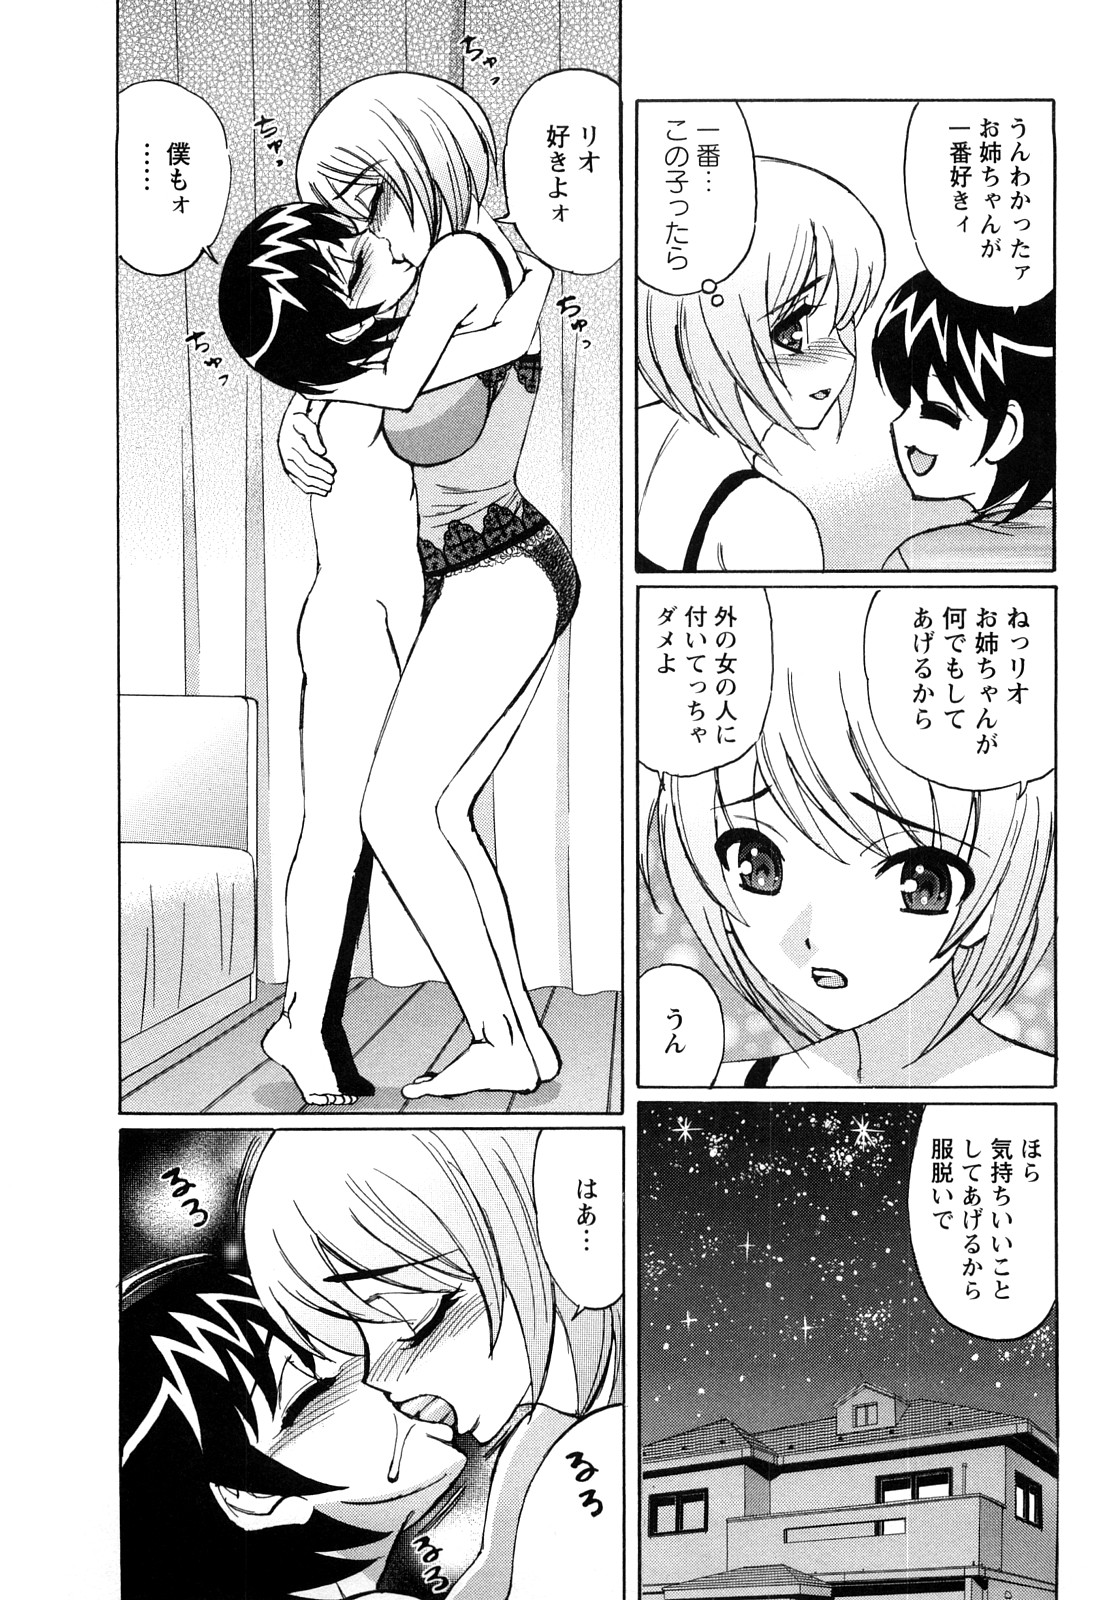 Hentai manga doujinshi online фото 100